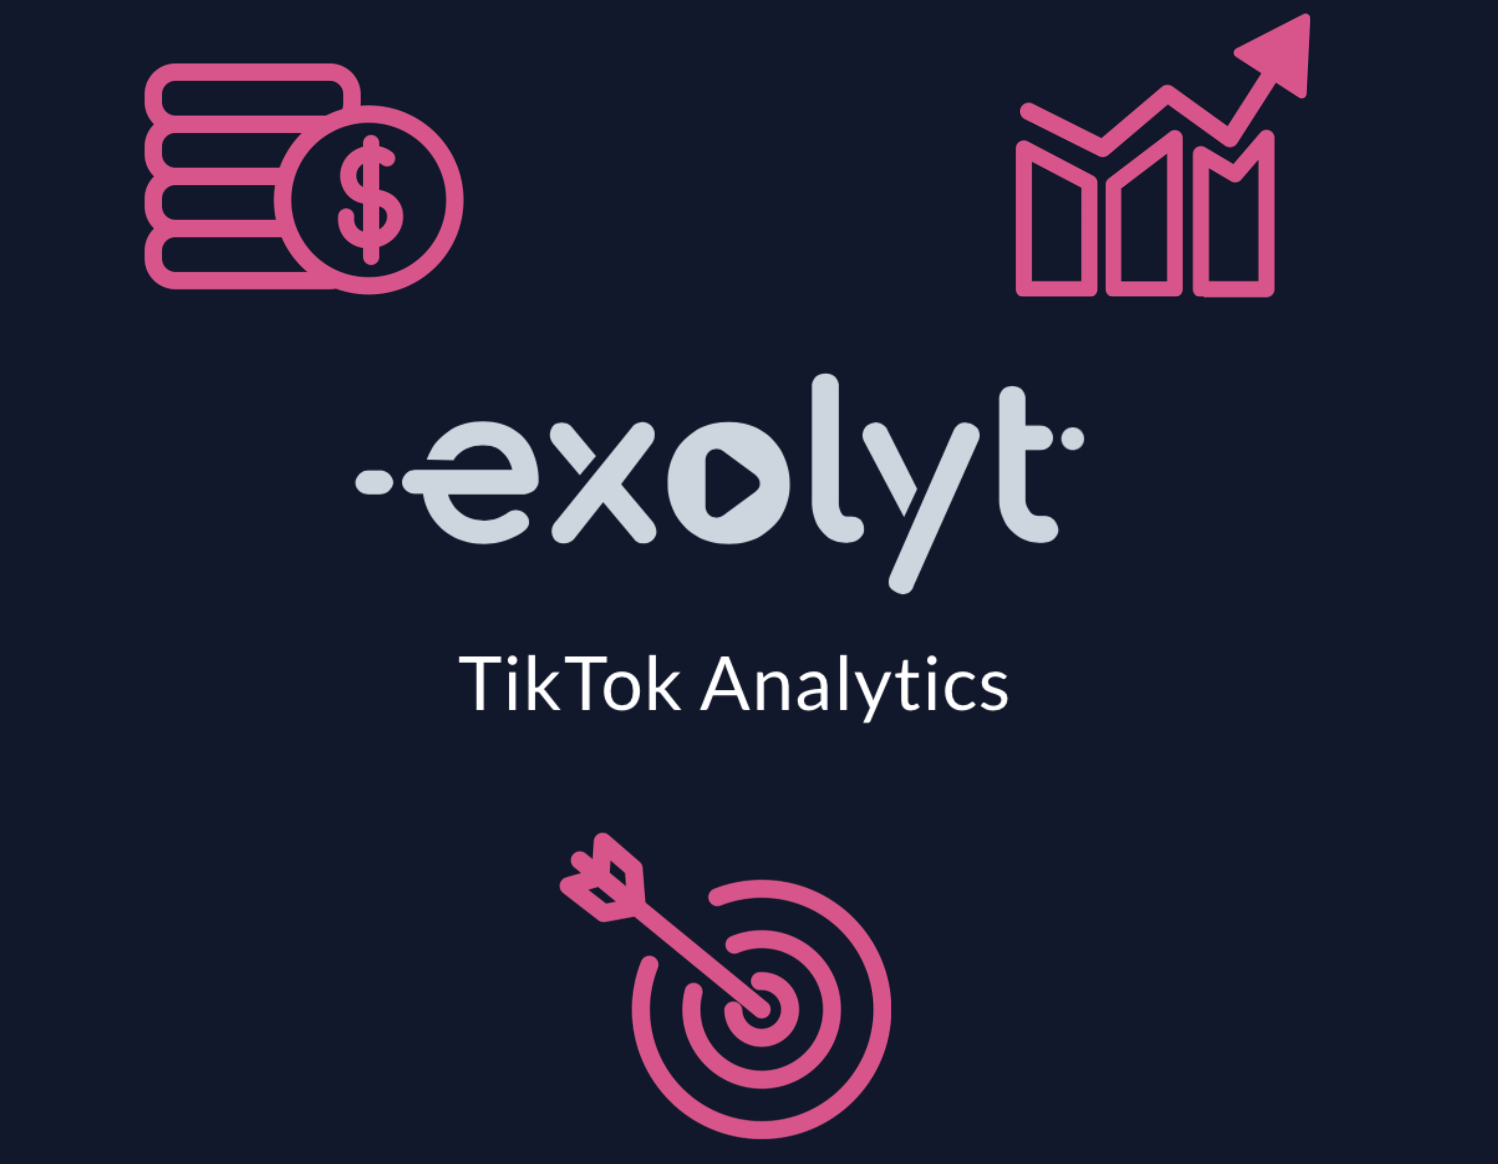 Varför mediebyråer bör använda Exolyt för TikTok-analyser